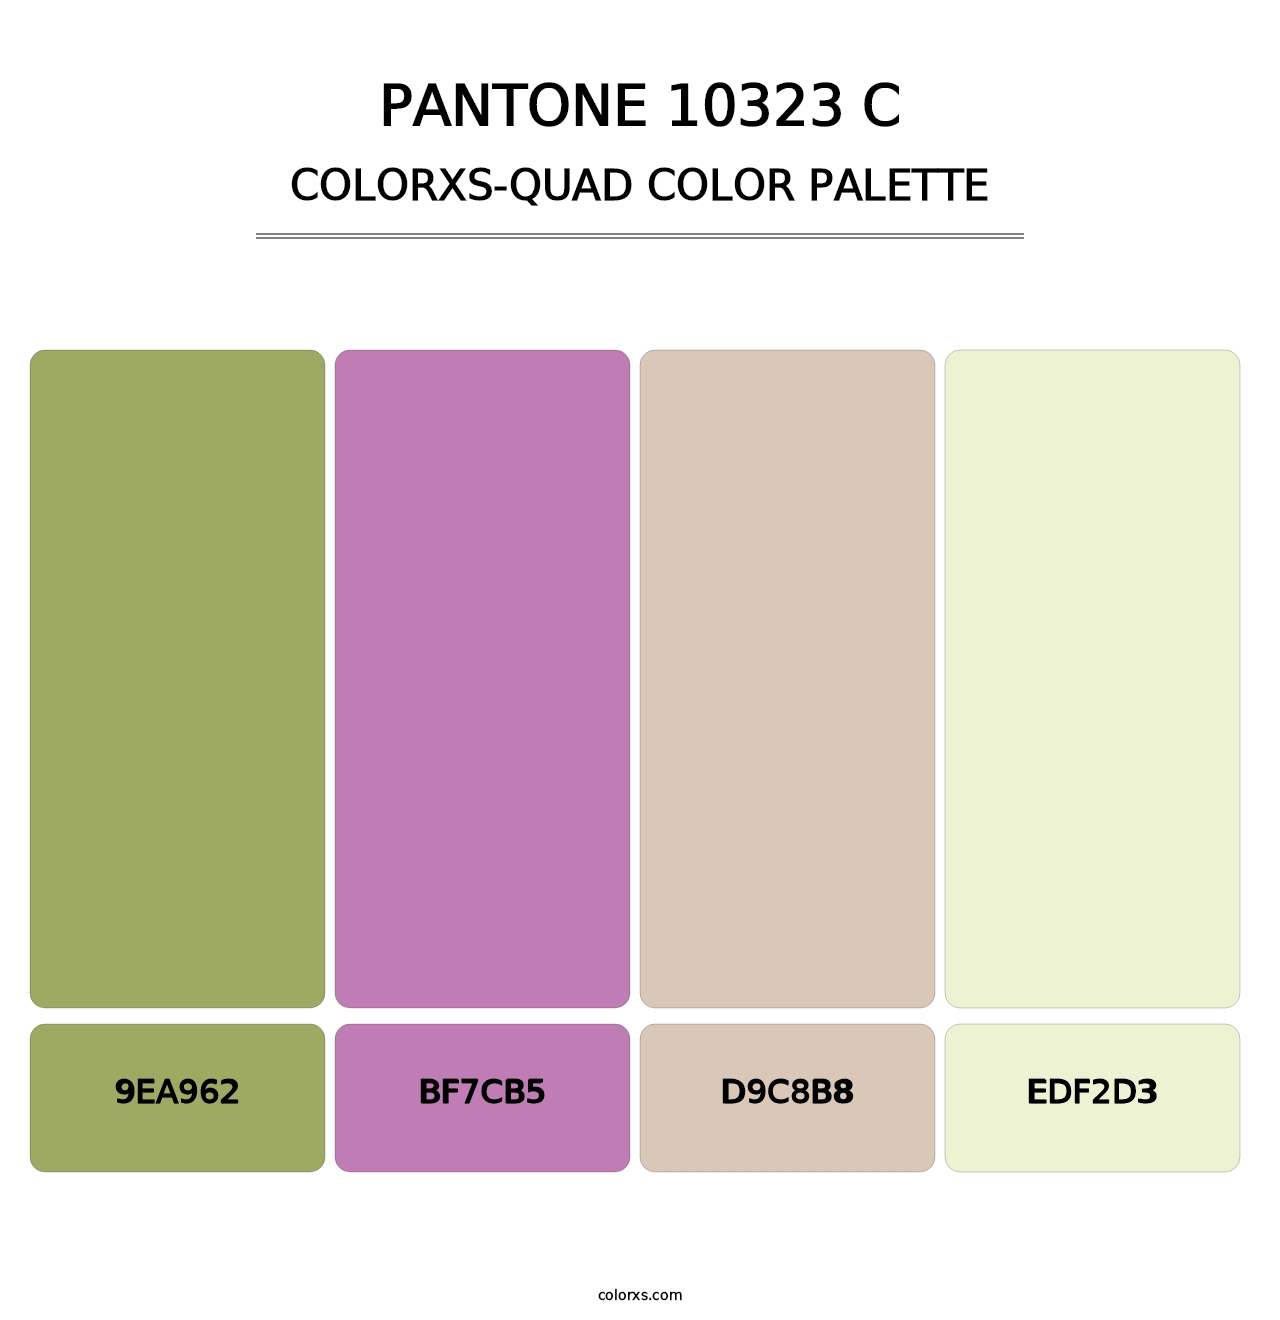 PANTONE 10323 C - Colorxs Quad Palette